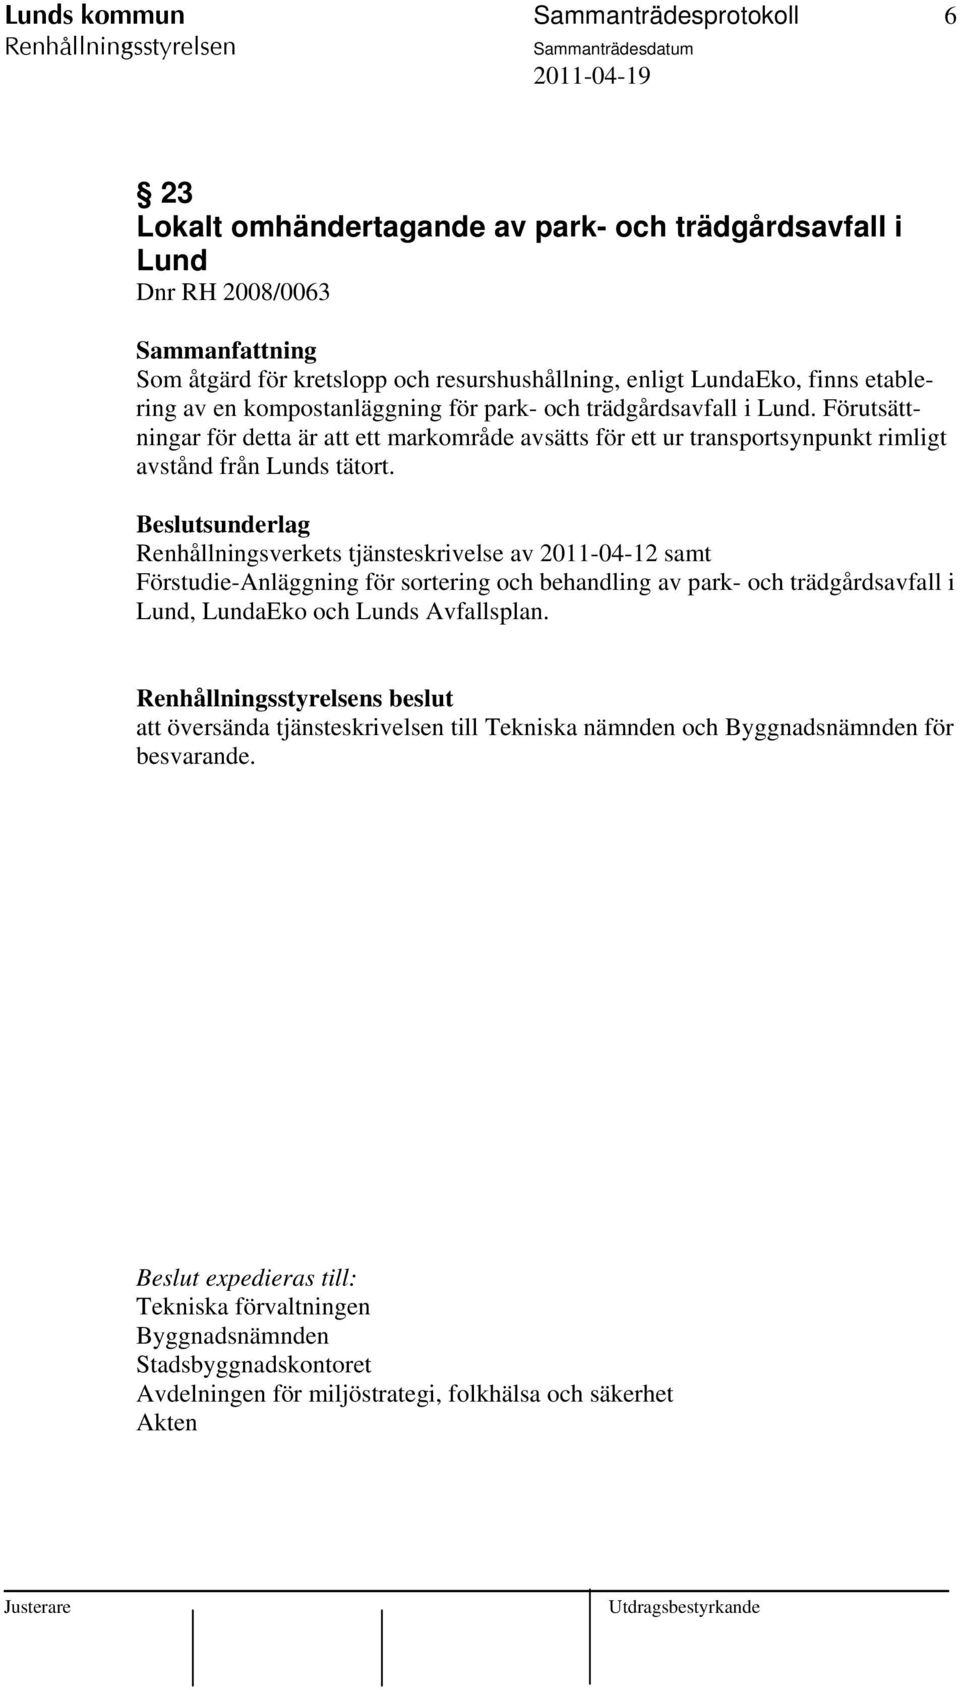 Renhållningsverkets tjänsteskrivelse av 2011-04-12 samt Förstudie-Anläggning för sortering och behandling av park- och trädgårdsavfall i Lund, LundaEko och Lunds Avfallsplan.